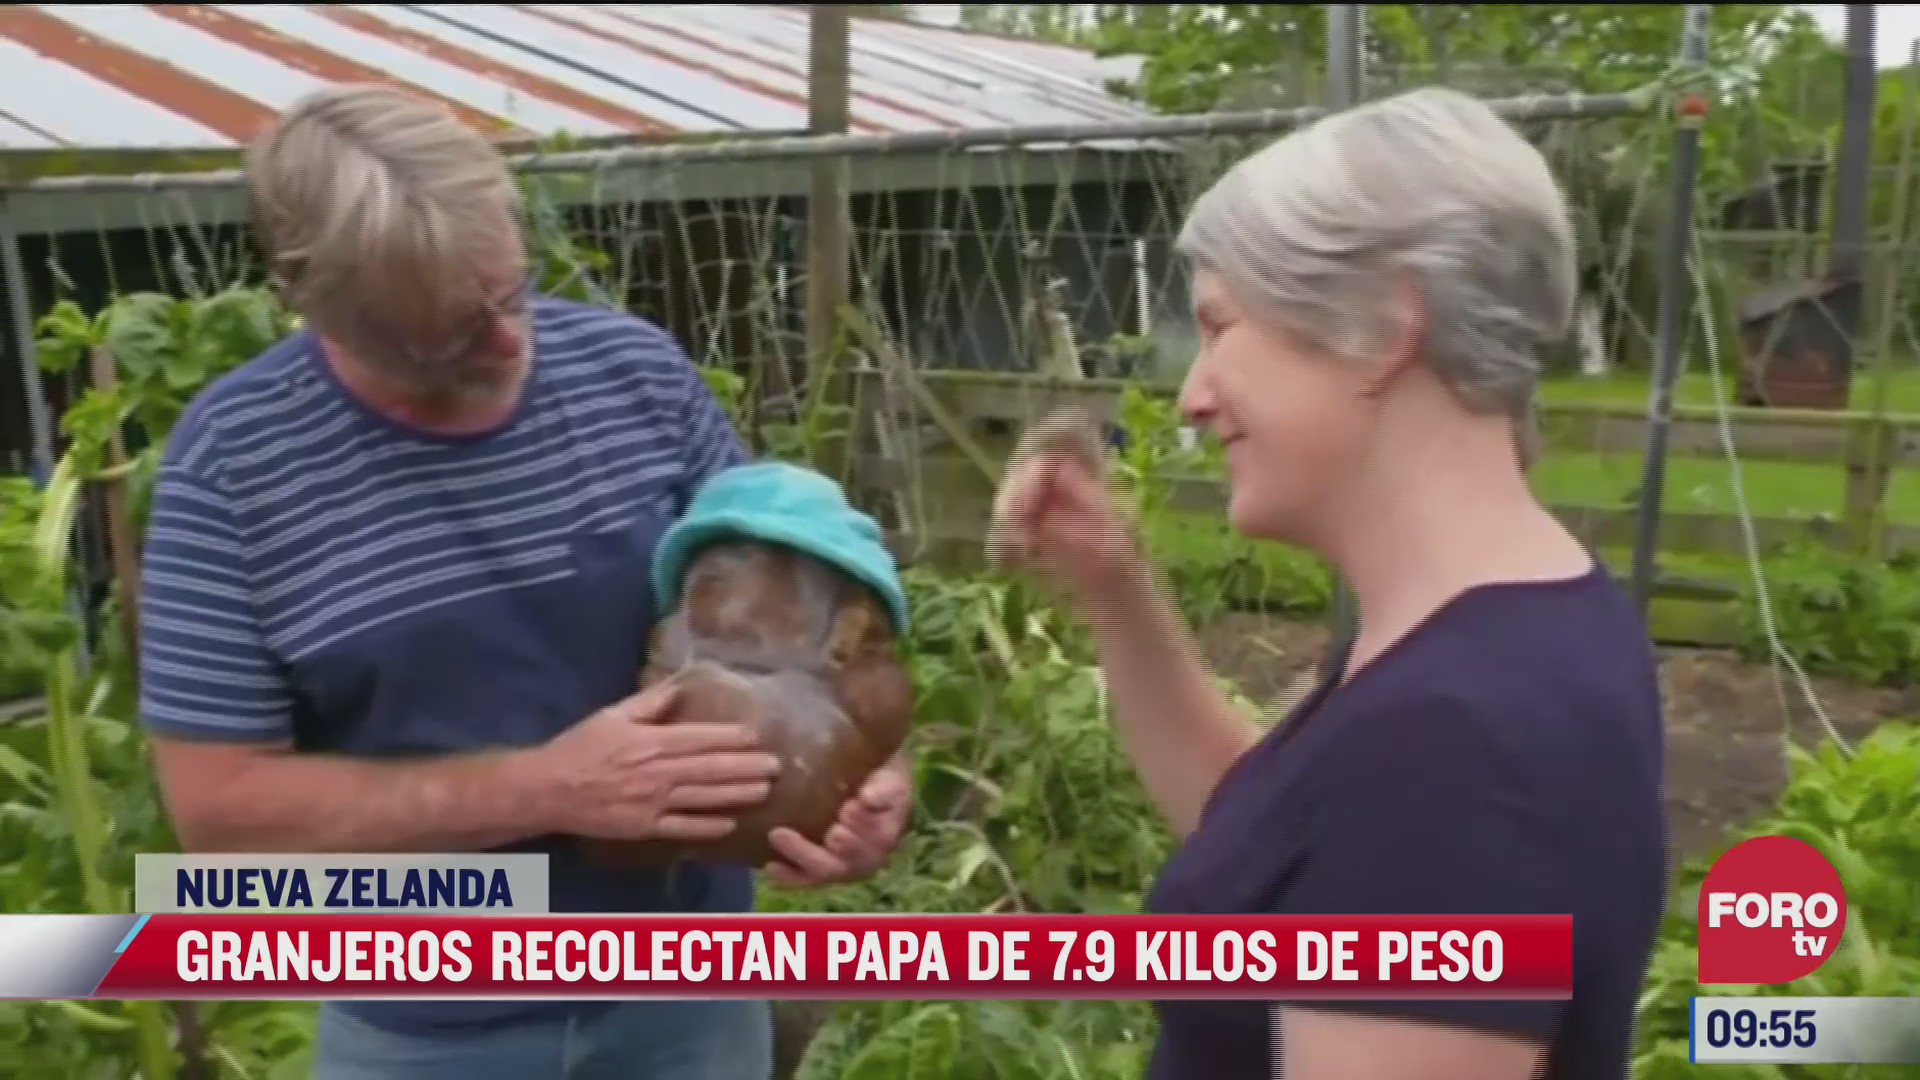 granjeros recolectan papa de 7 9 kilos en nueva zelanda